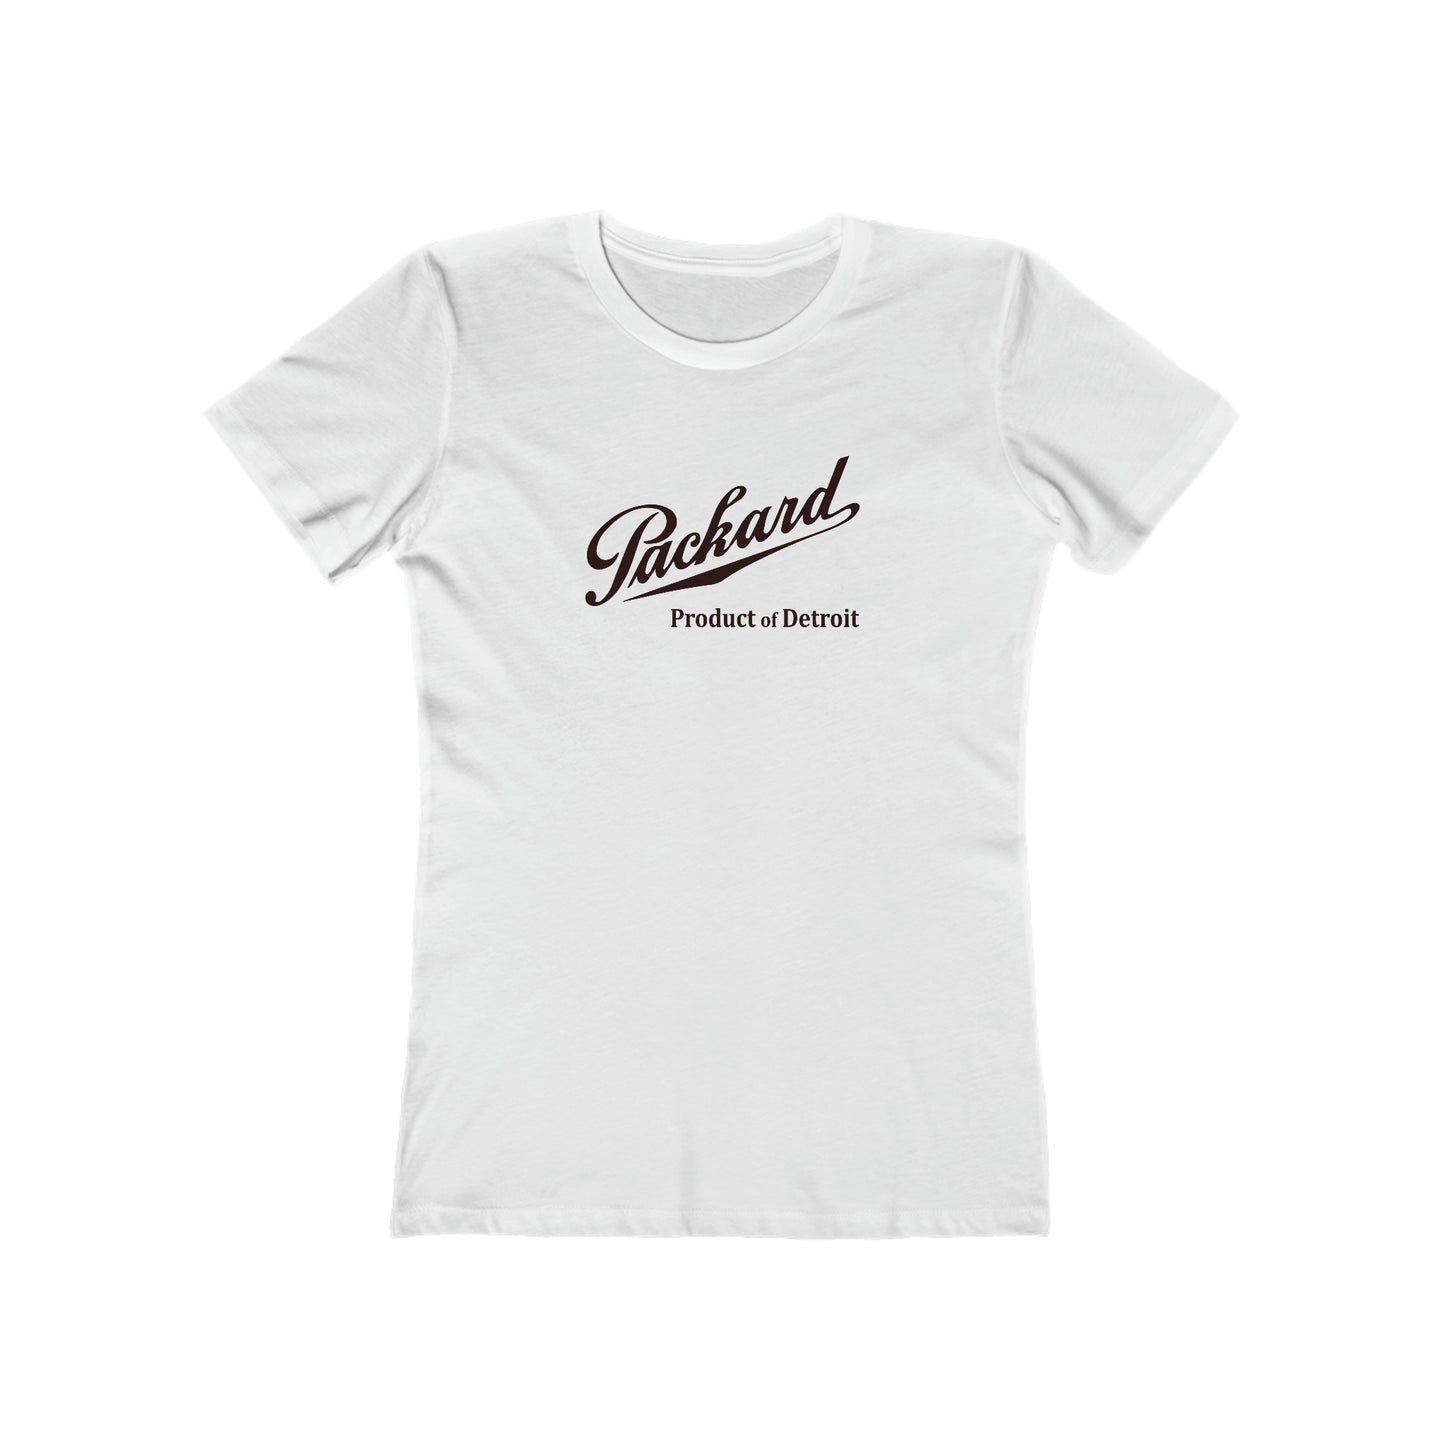 Packard - Women's T-Shirt